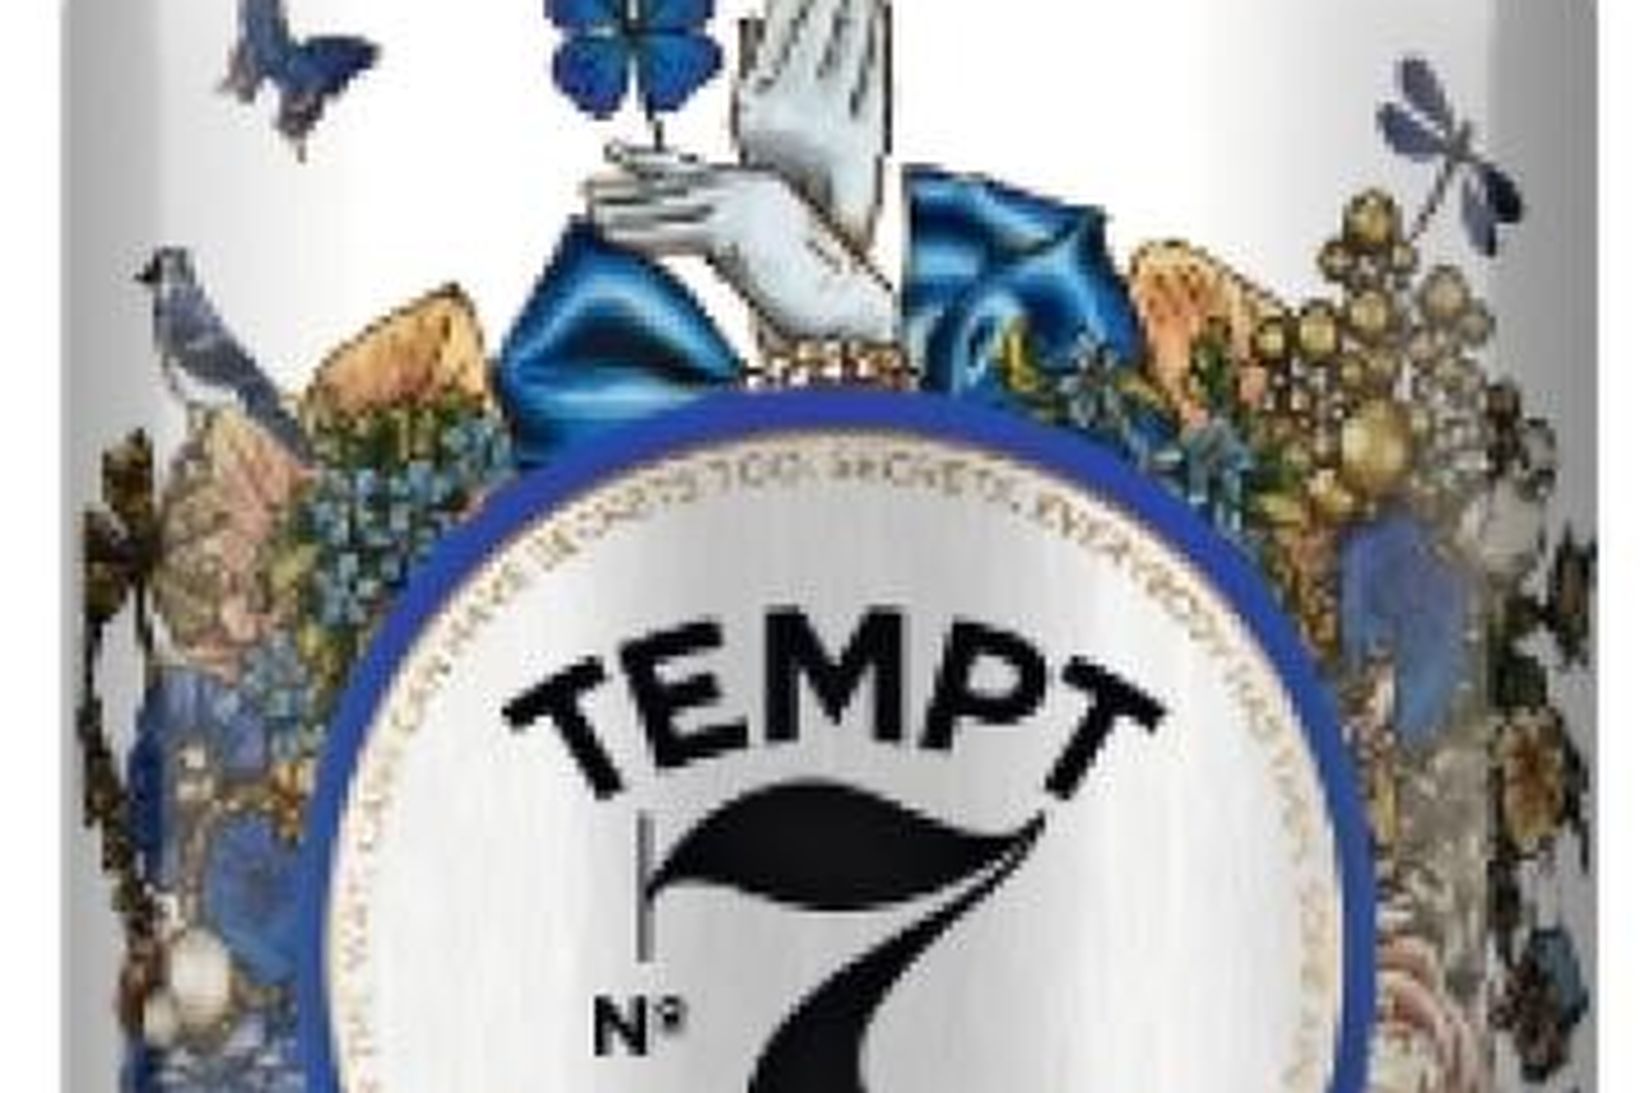 Tempt 7 Cider